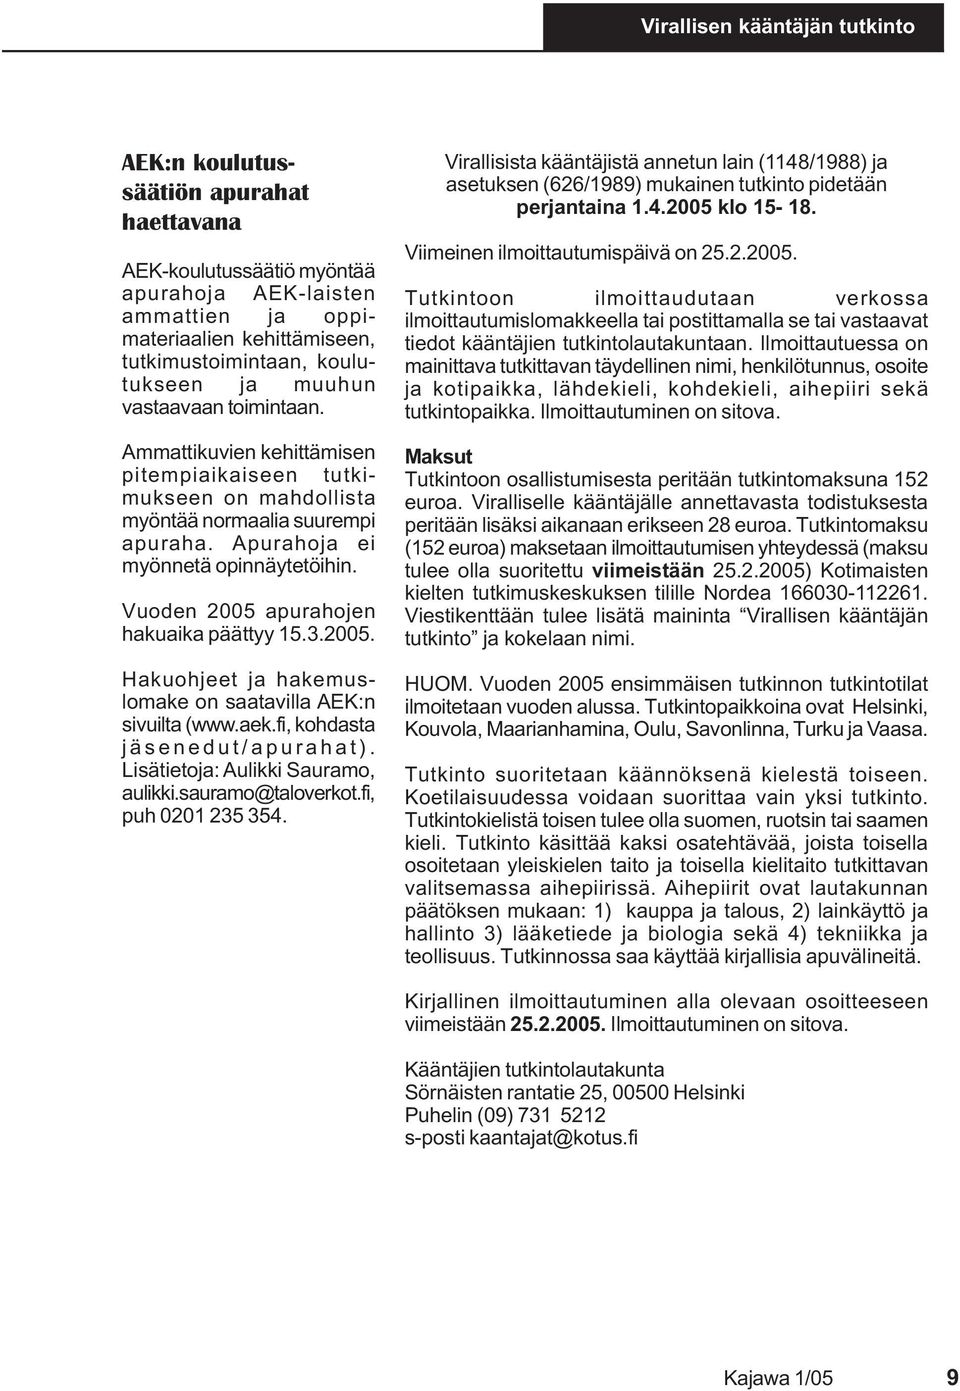 Vuoden 2005 apurahojen hakuaika päättyy 15.3.2005. Hakuohjeet ja hakemuslomake on saatavilla AEK:n sivuilta (www.aek.fi, kohdasta jäsenedut/apurahat). Lisätietoja: Aulikki Sauramo, aulikki.